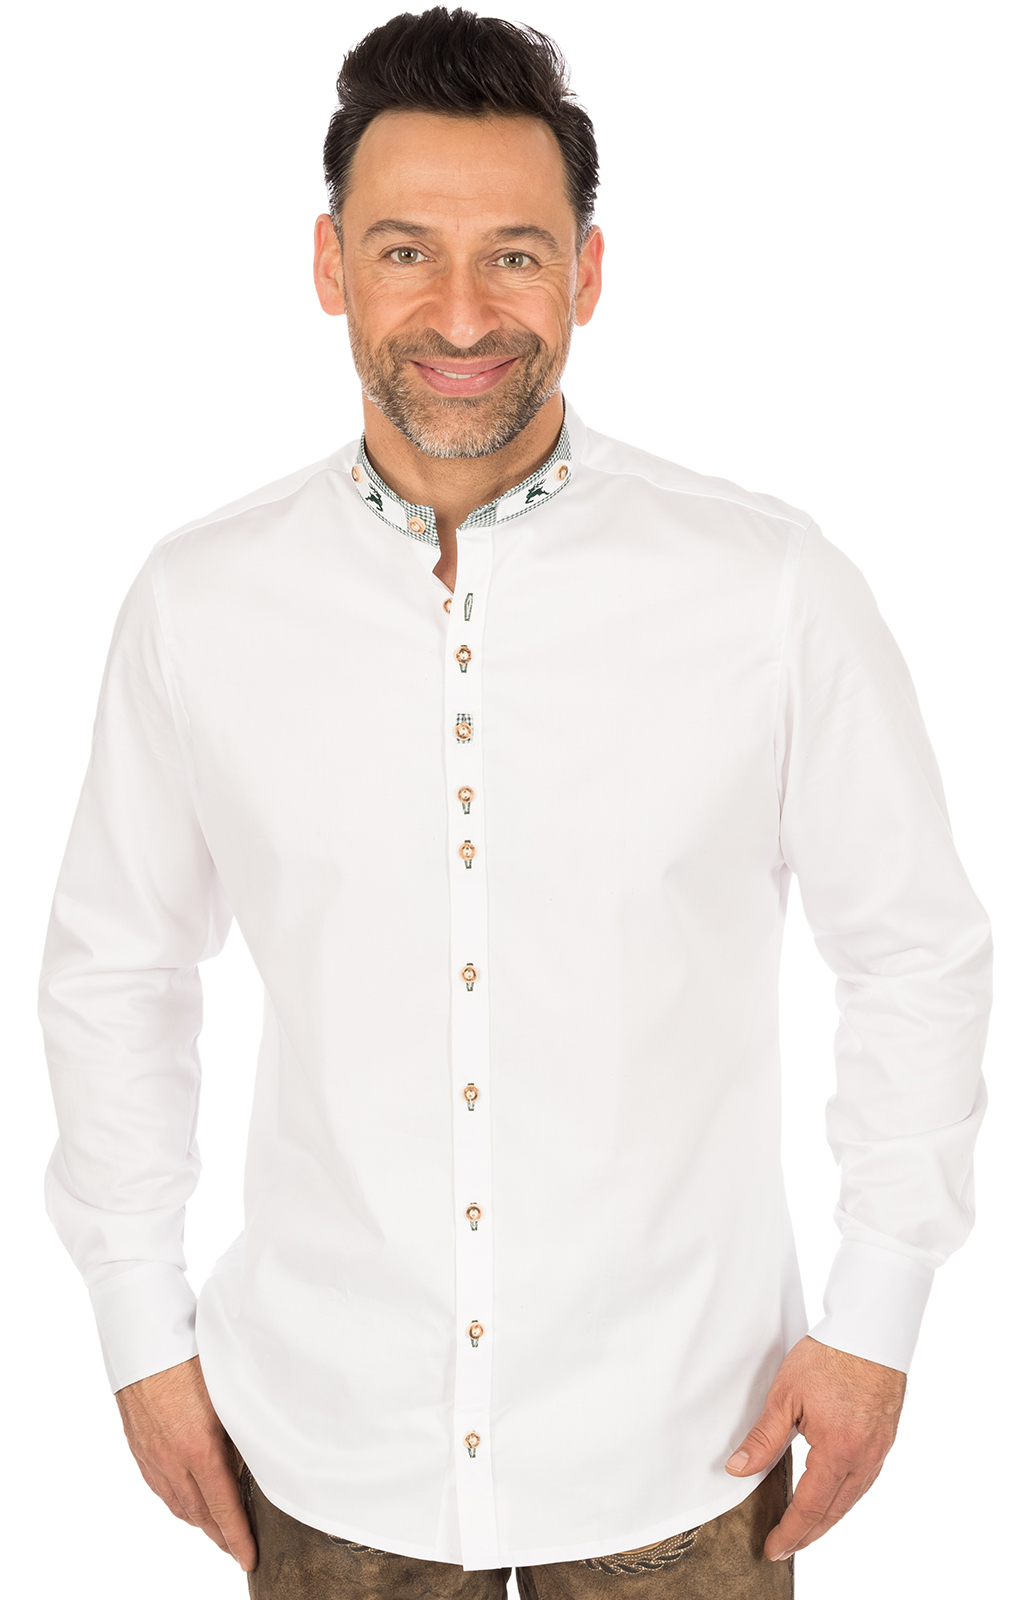 German traditional shirt Slim fit PERINO white von OS-Trachten